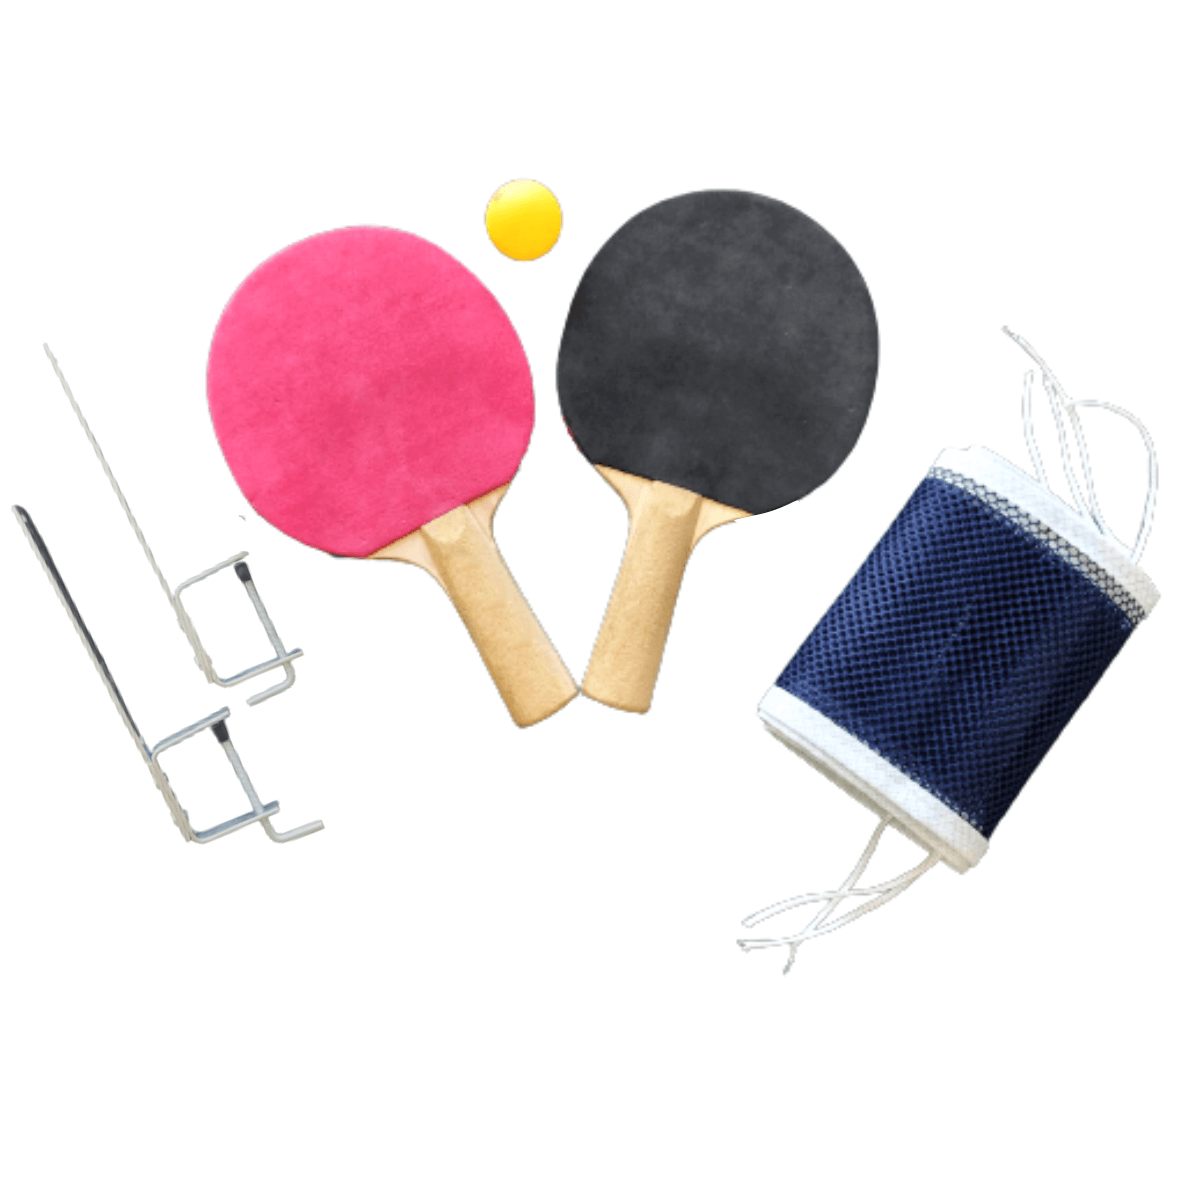 Jogo de Raquetes Tênis com Rede e Bolinha Brinquedo Infantil no